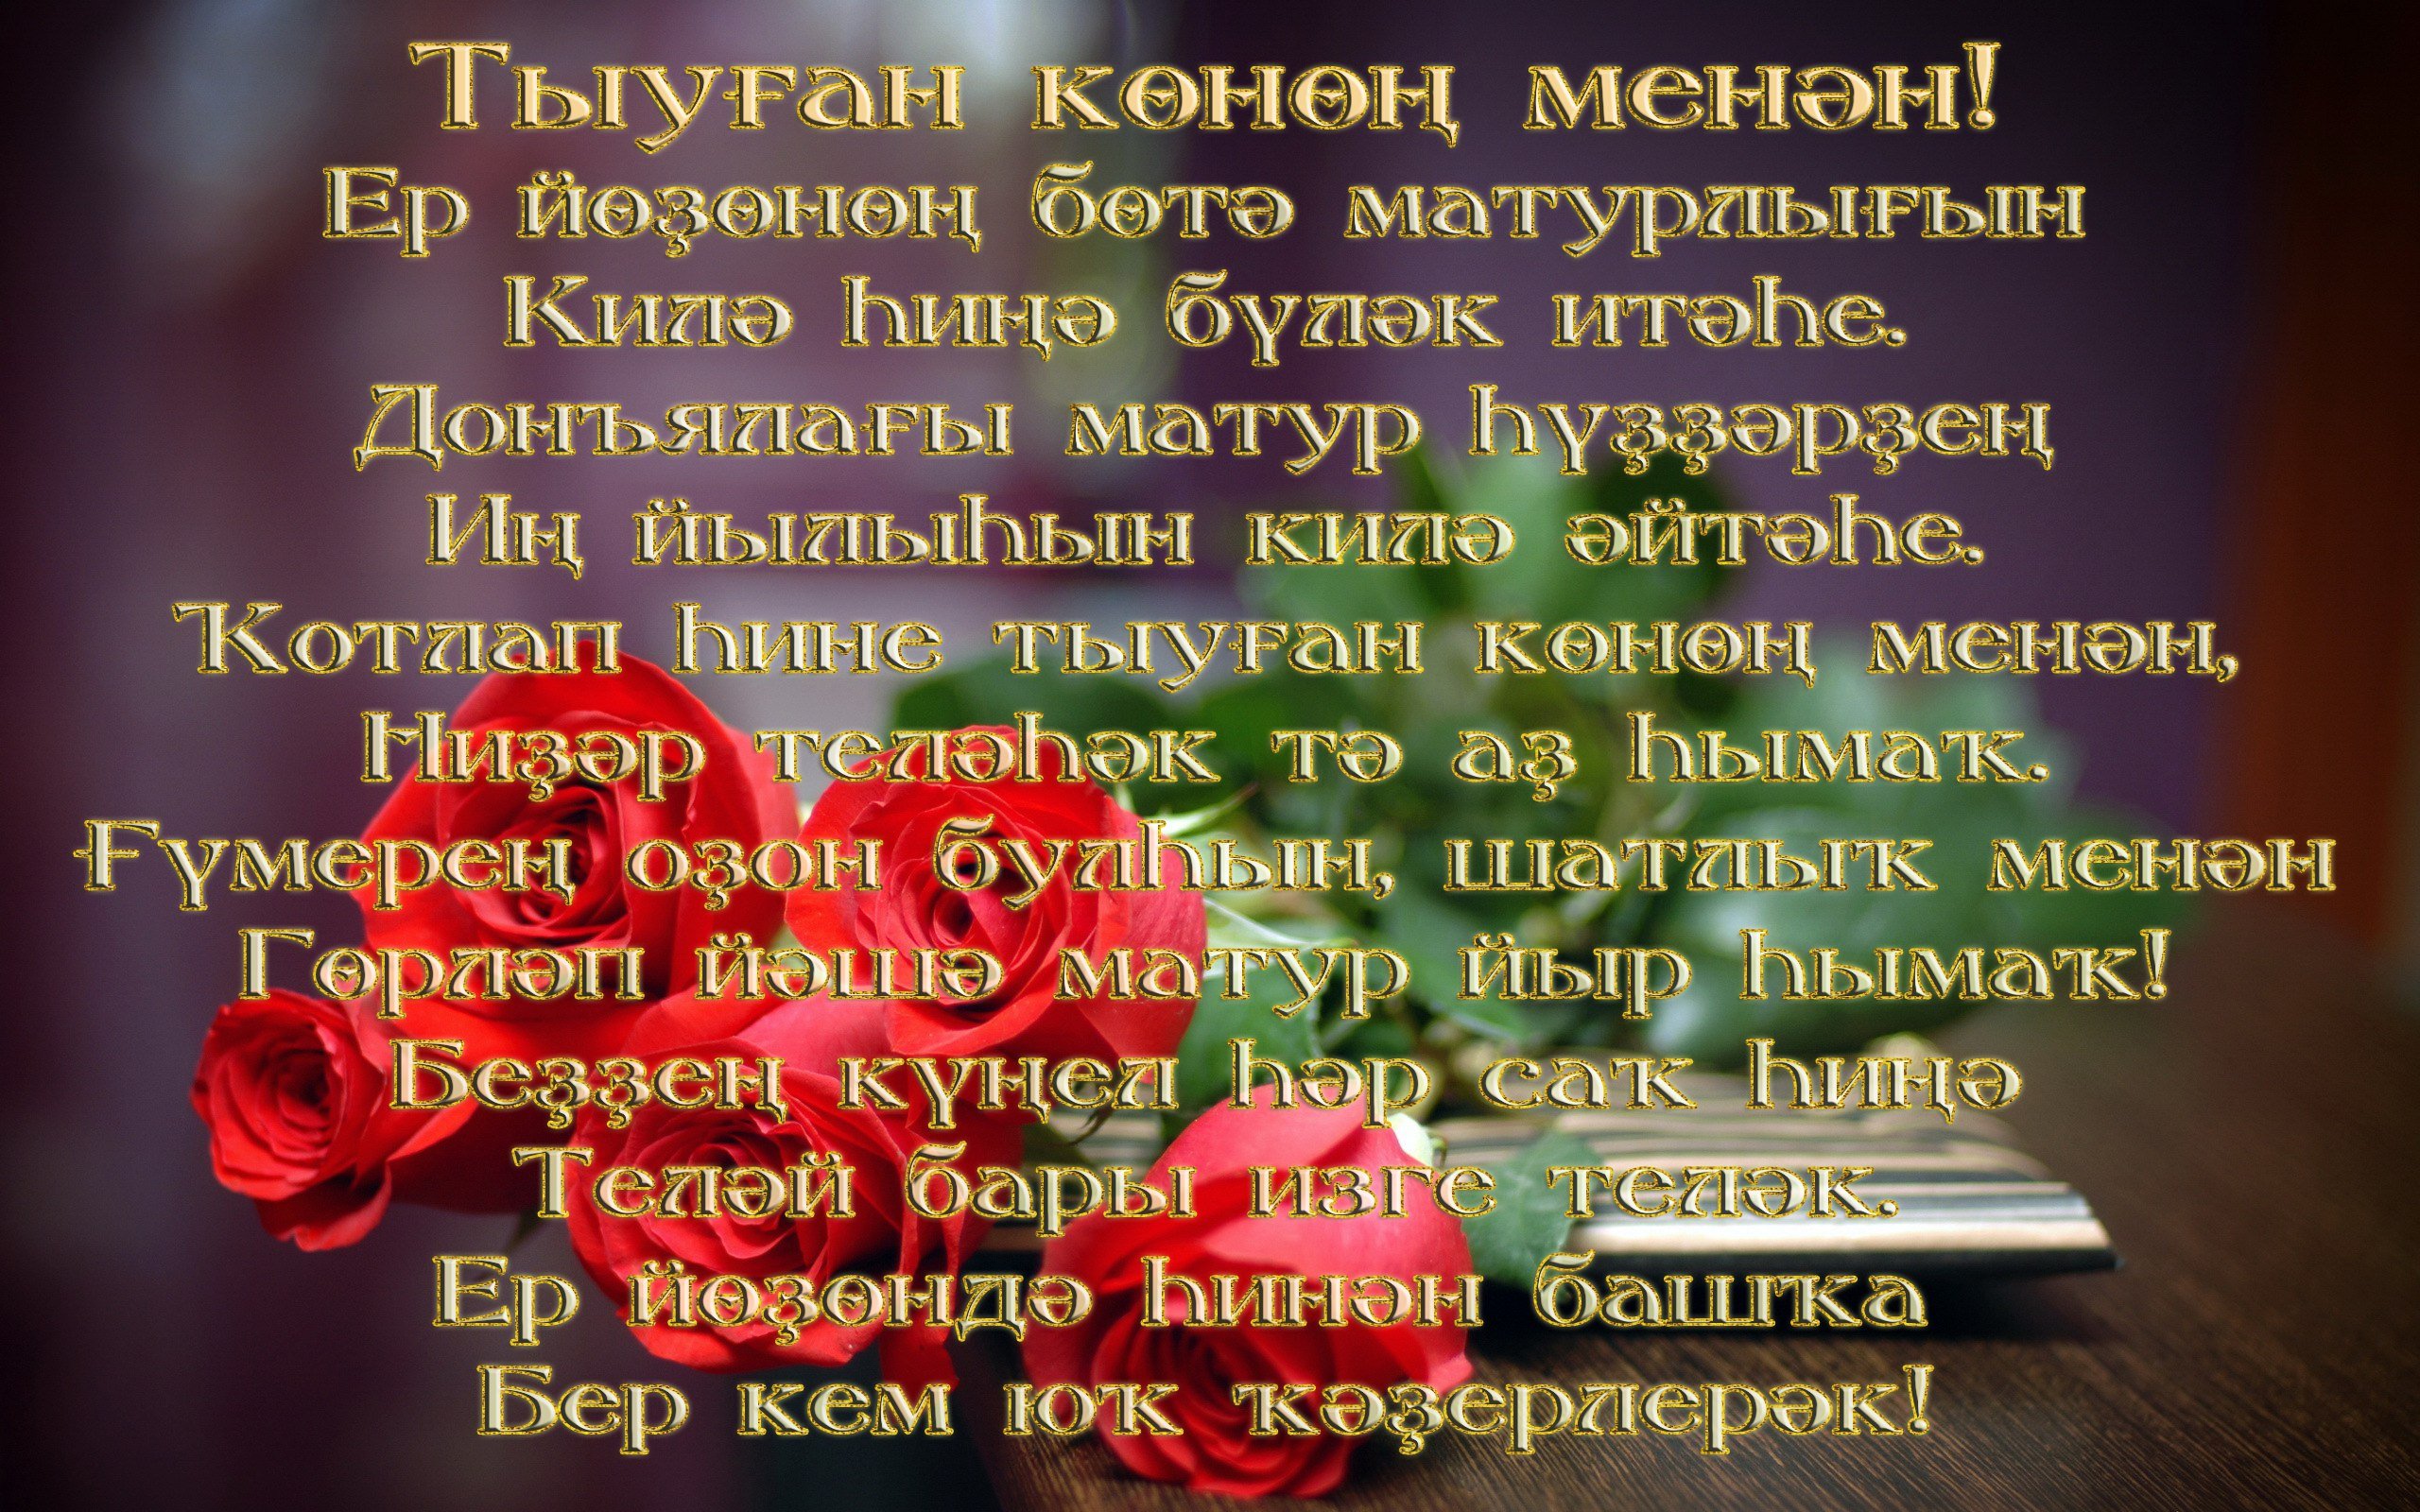 Башкирские пожелания на день рождения. Поздравления на башкирском. Поздравления с днём рождения на башкирском языке. Поздравления башкирском языке женщине. Поздравление с юбилеем на башкирском.